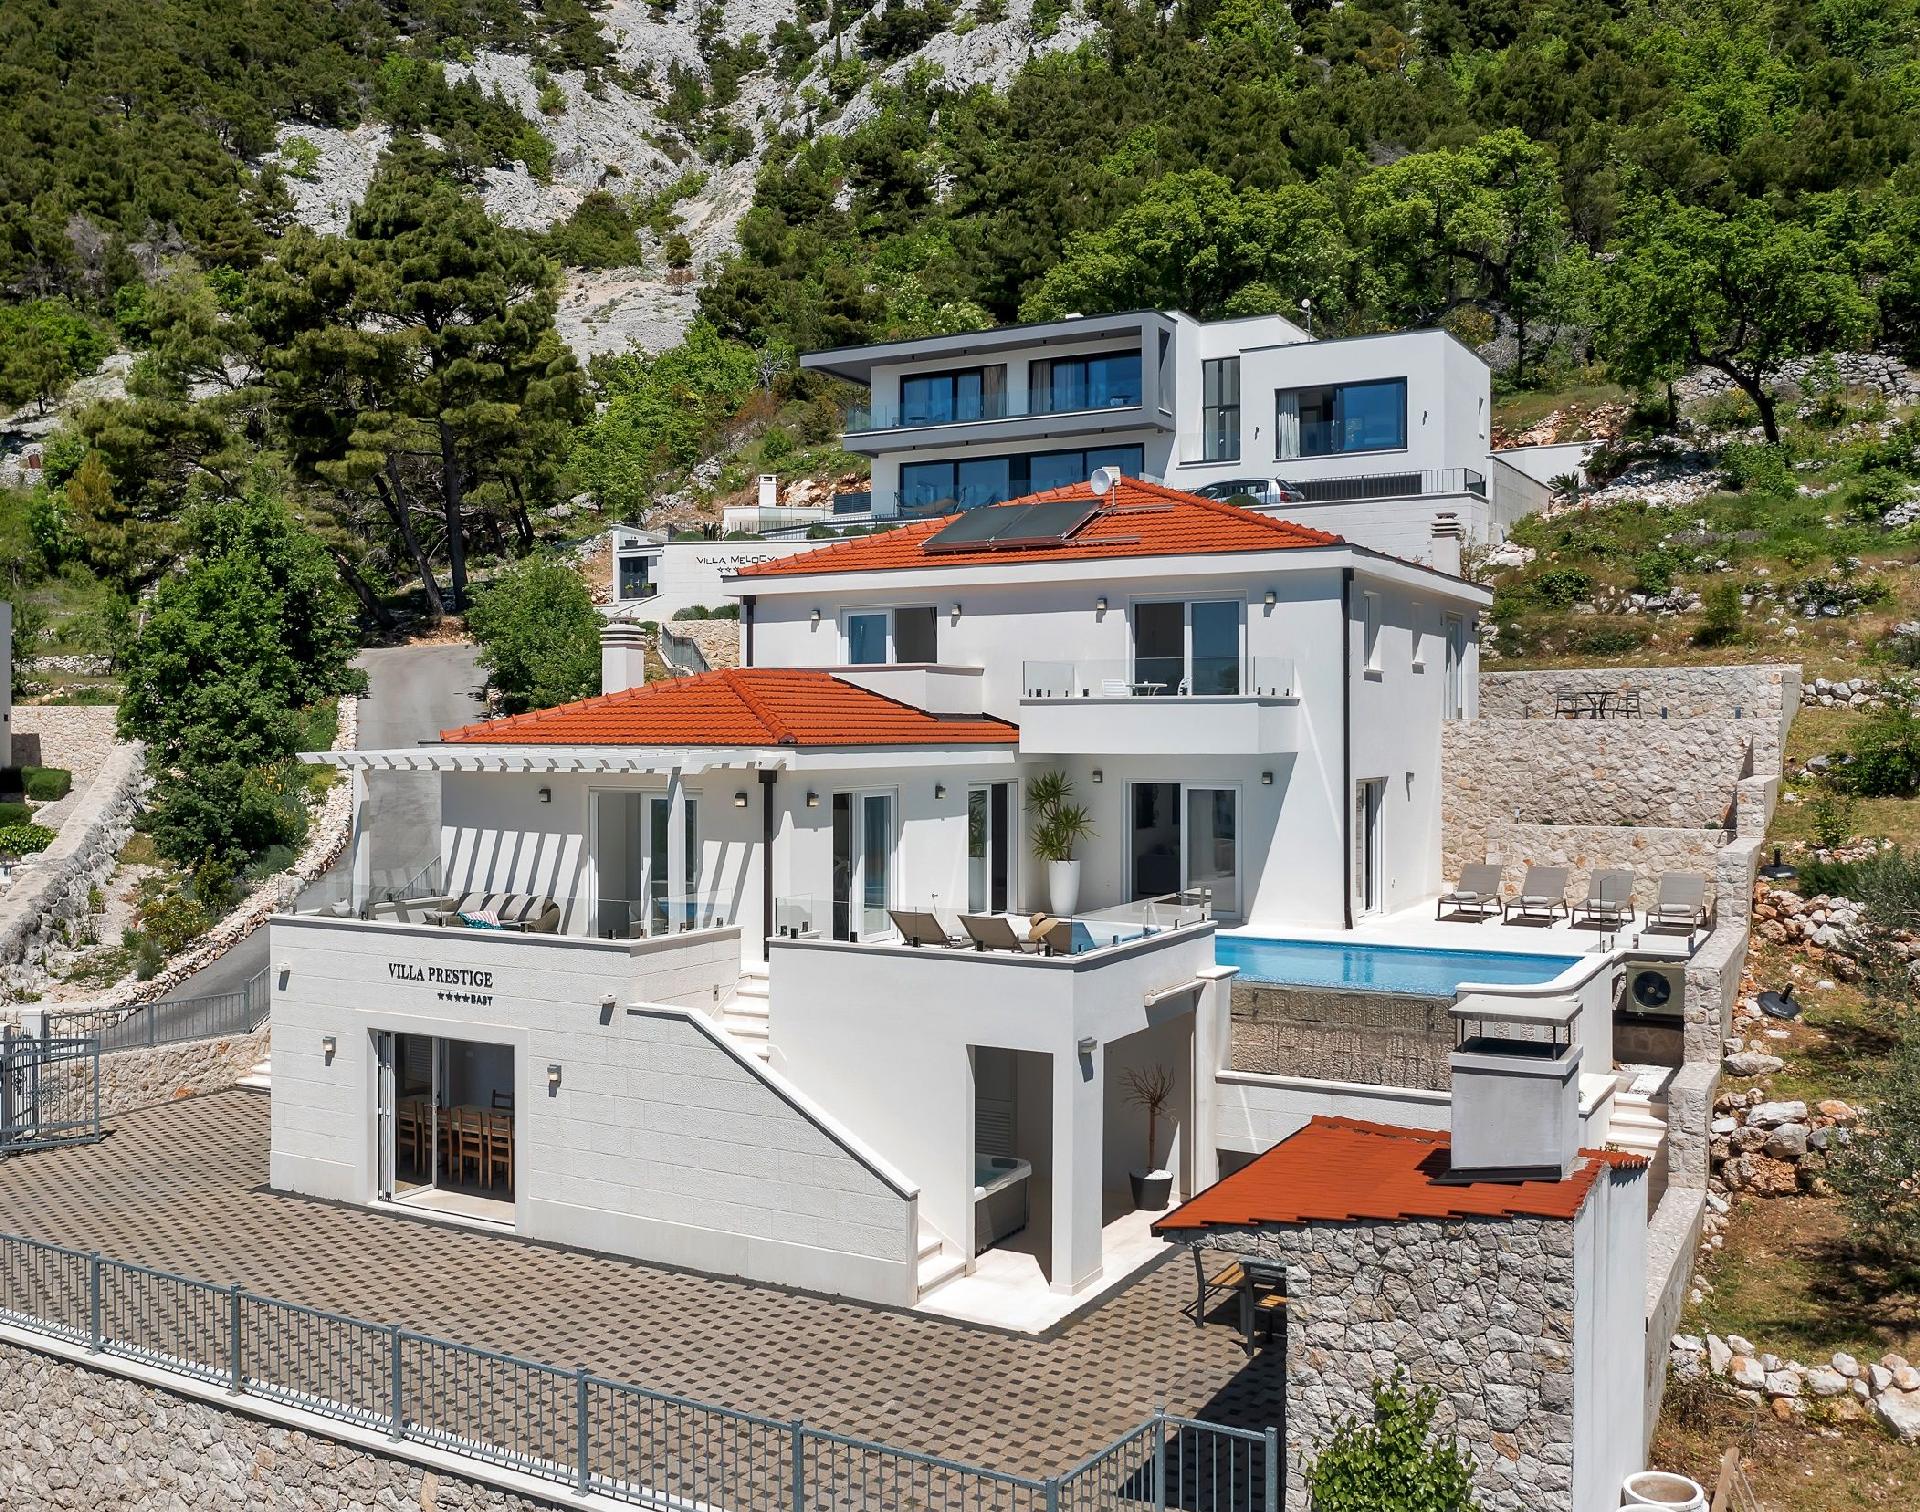 Ferienhaus mit Privatpool für 8 Personen  + 2 Ferienhaus in Kroatien